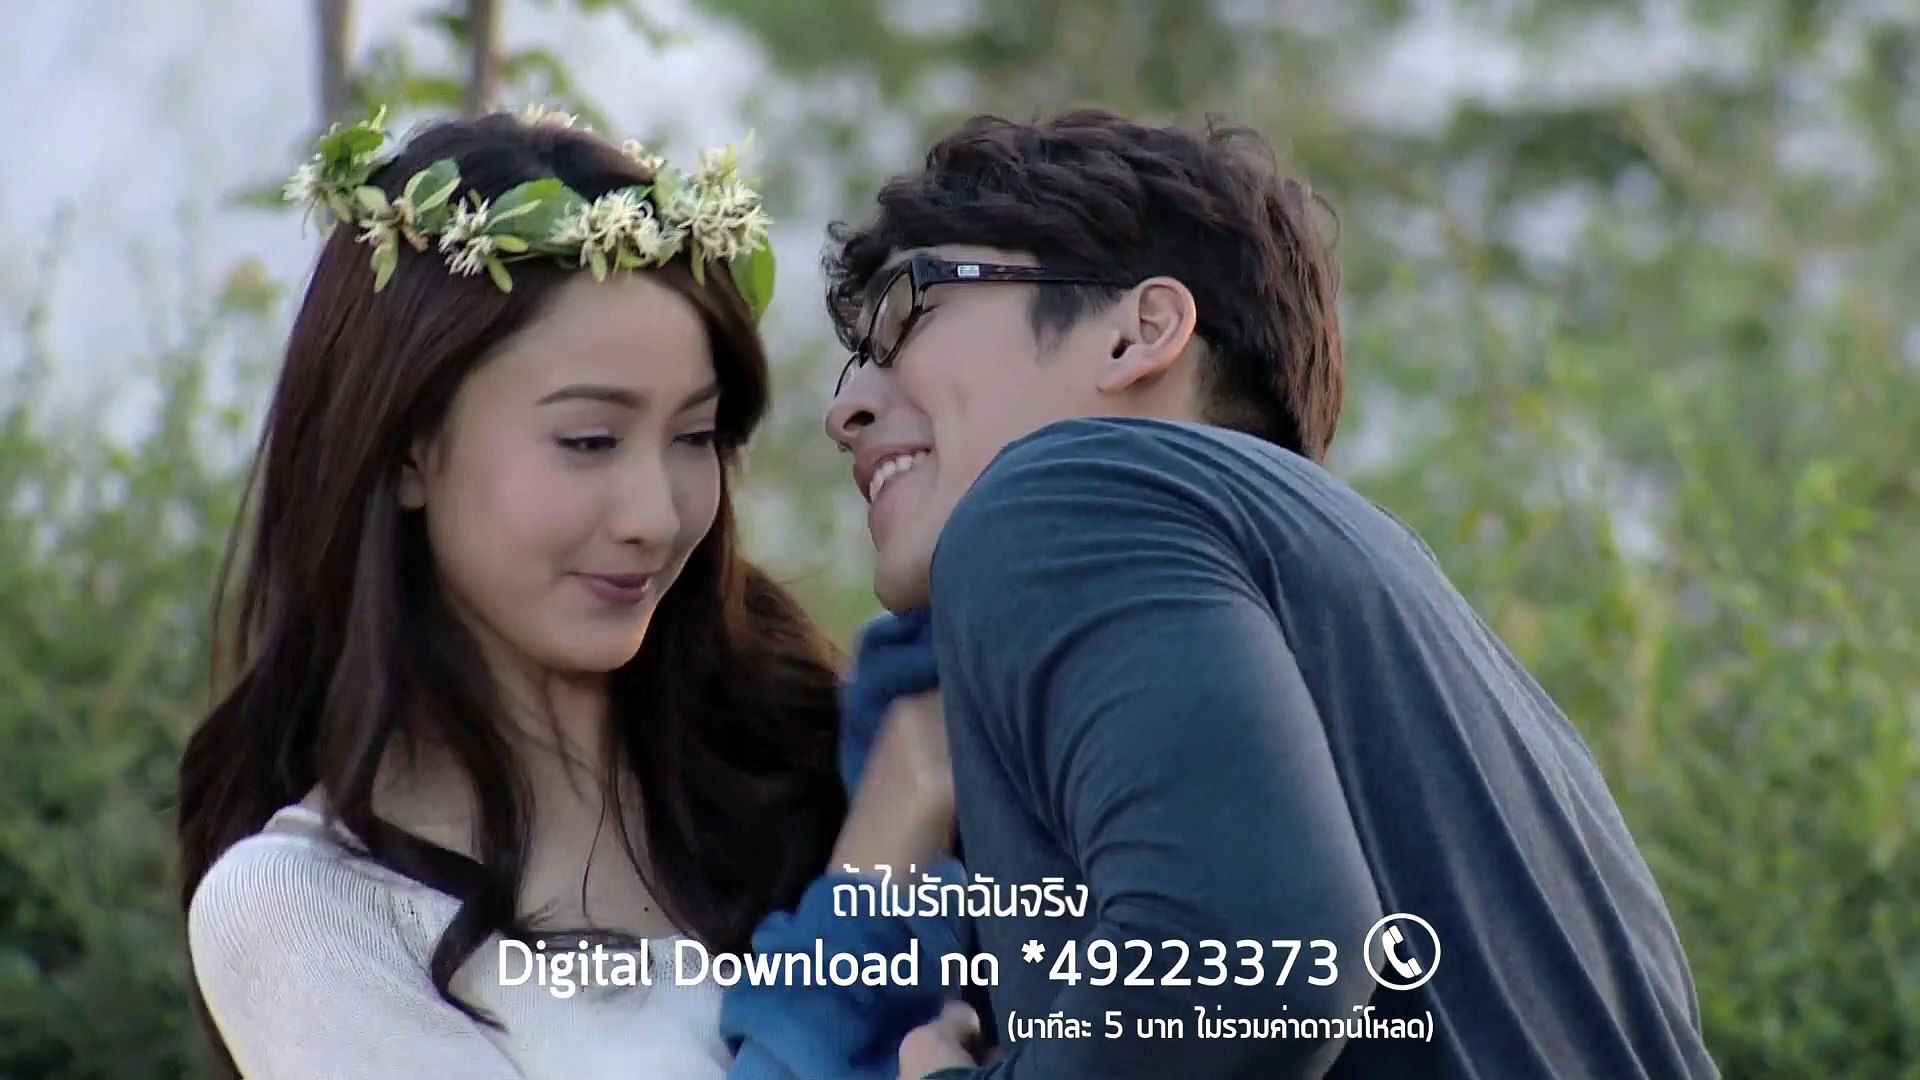 Hóng 6 koojin - cặp đôi màn ảnh Thái Lan được yêu thích trong năm 2019 (11)